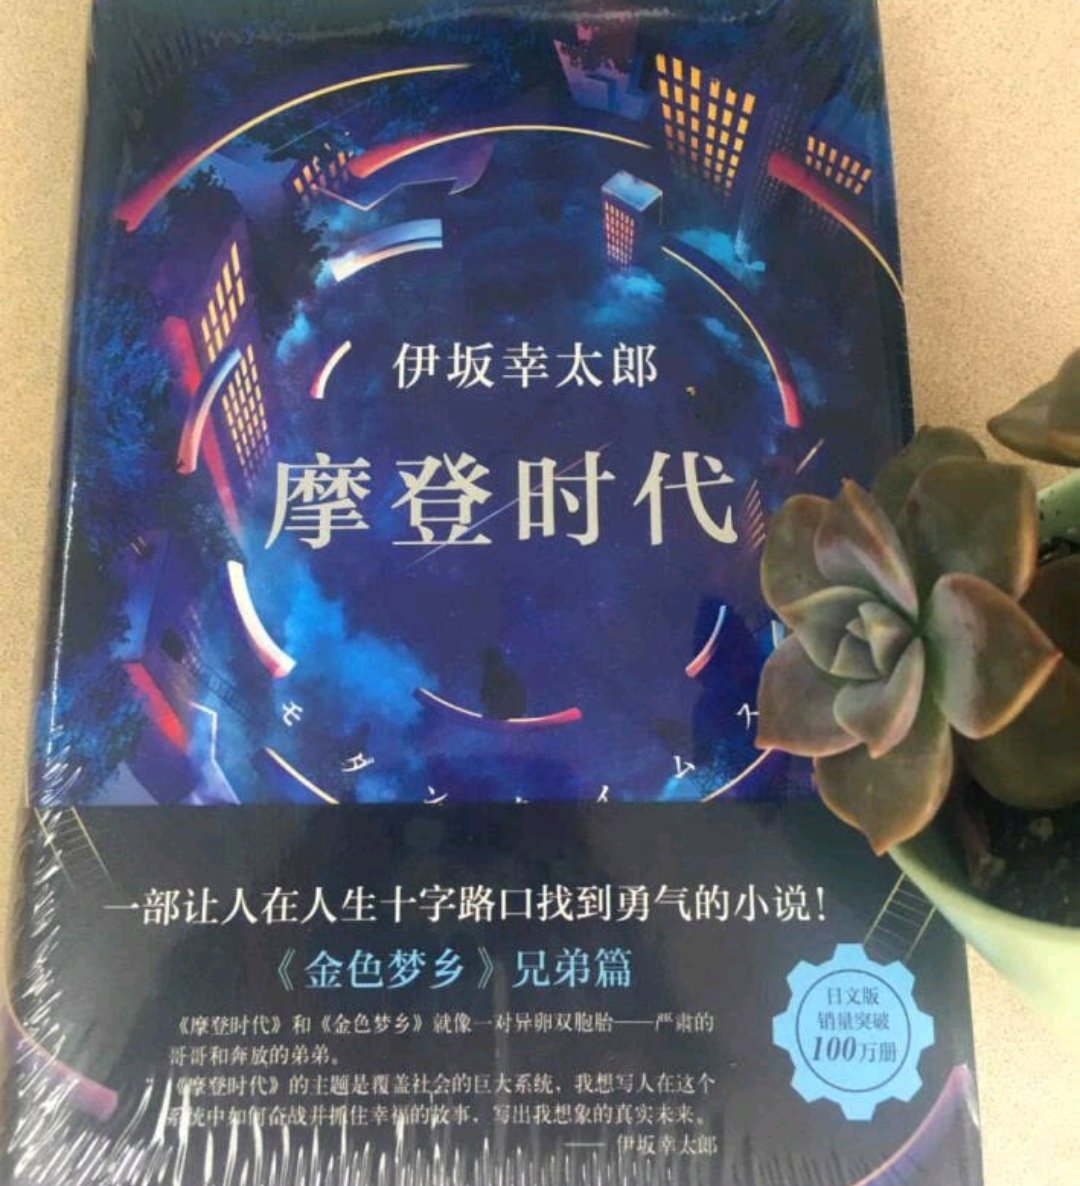 这次买了伊坂幸太郎的两本，她的推理小说算是不错的，打算等有空慢慢看。书是正品，包装很精美，物流也快。活动时买了不少书。